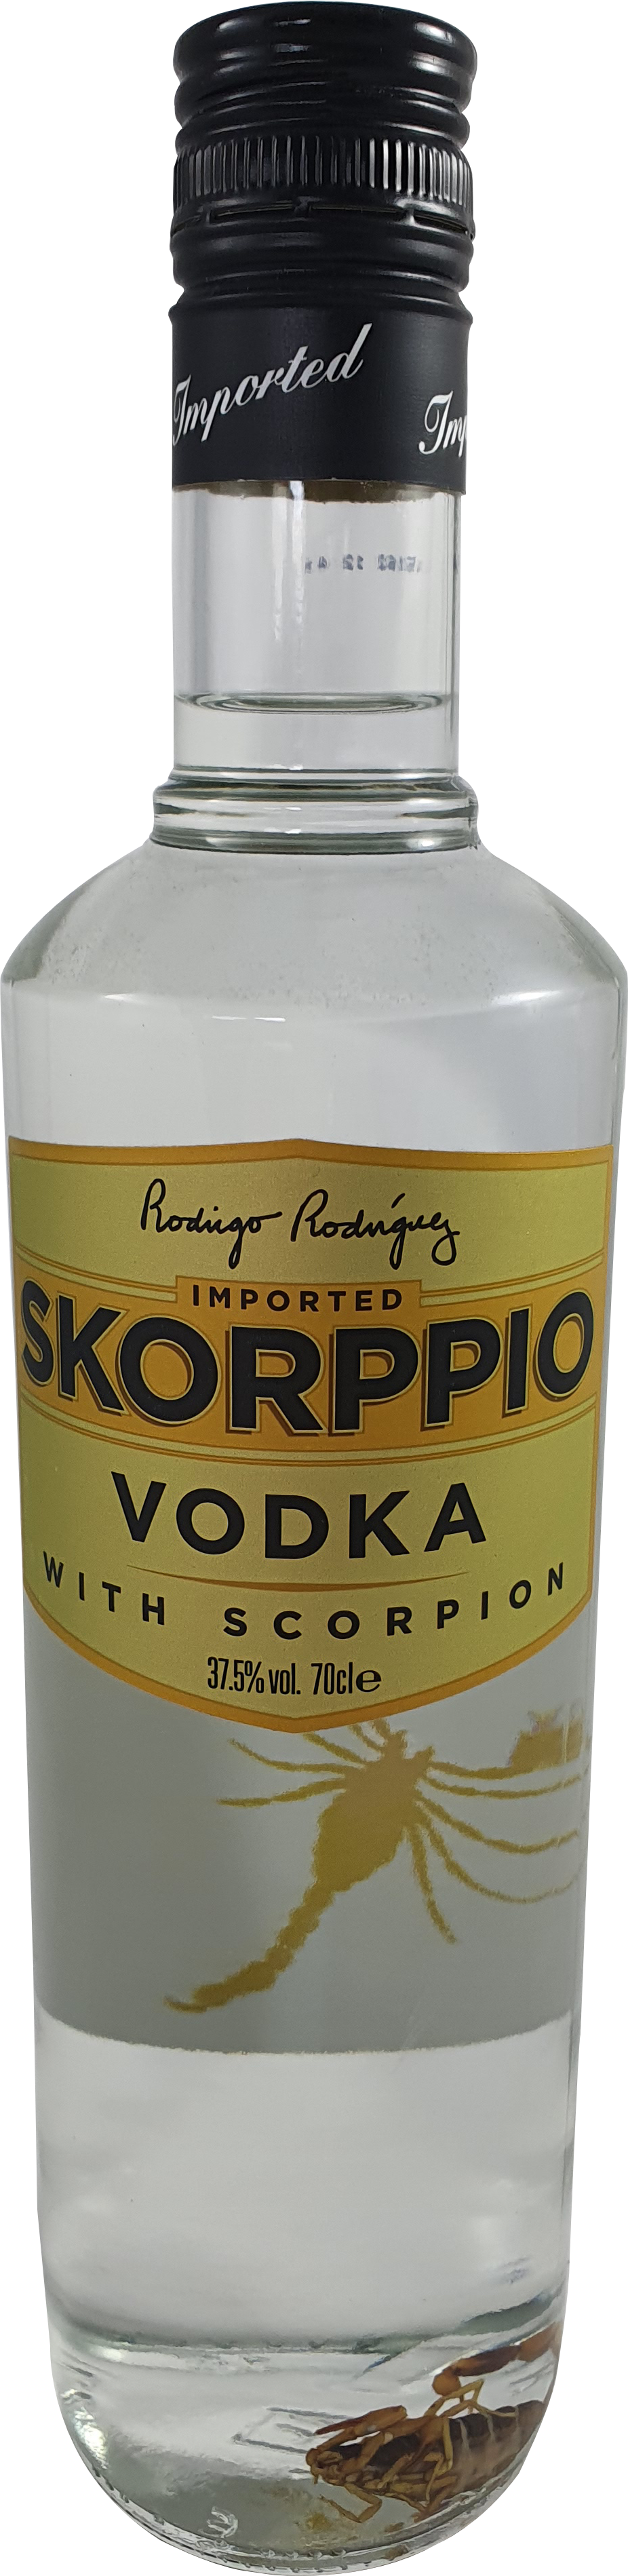 Skorpio Vodka 37.5% 